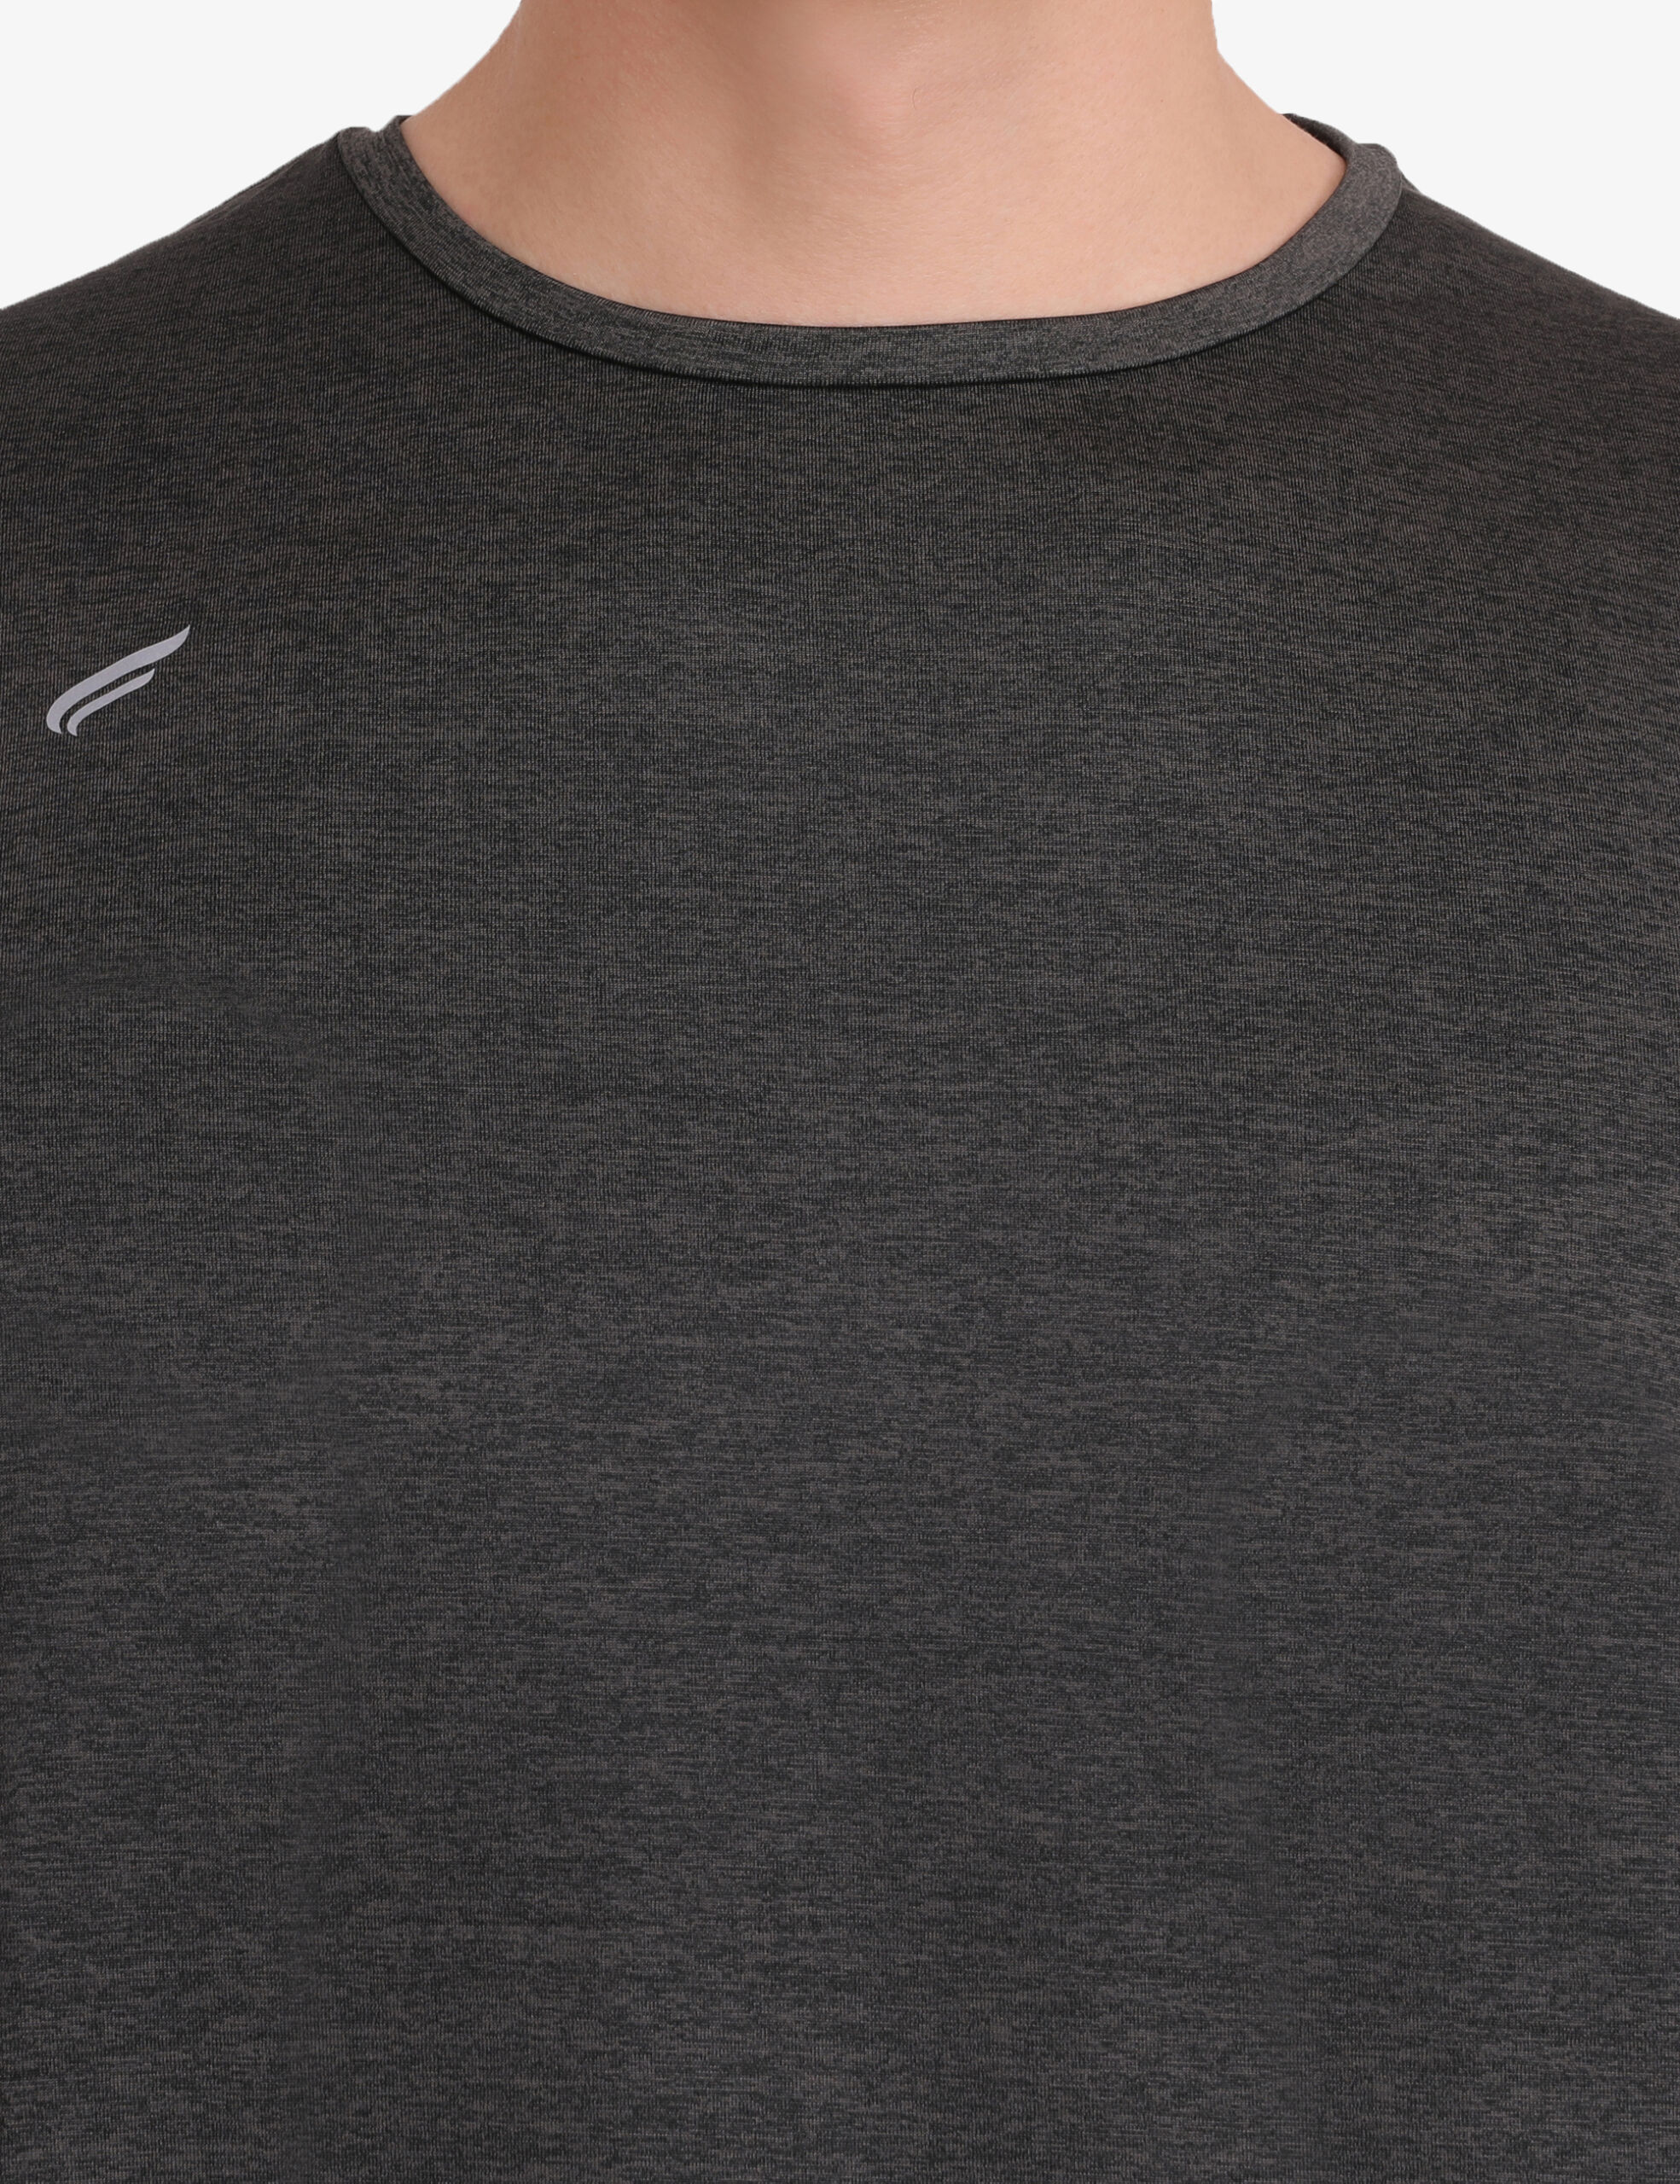 ASI Aqua Charcoal Sports T-shirt for Men